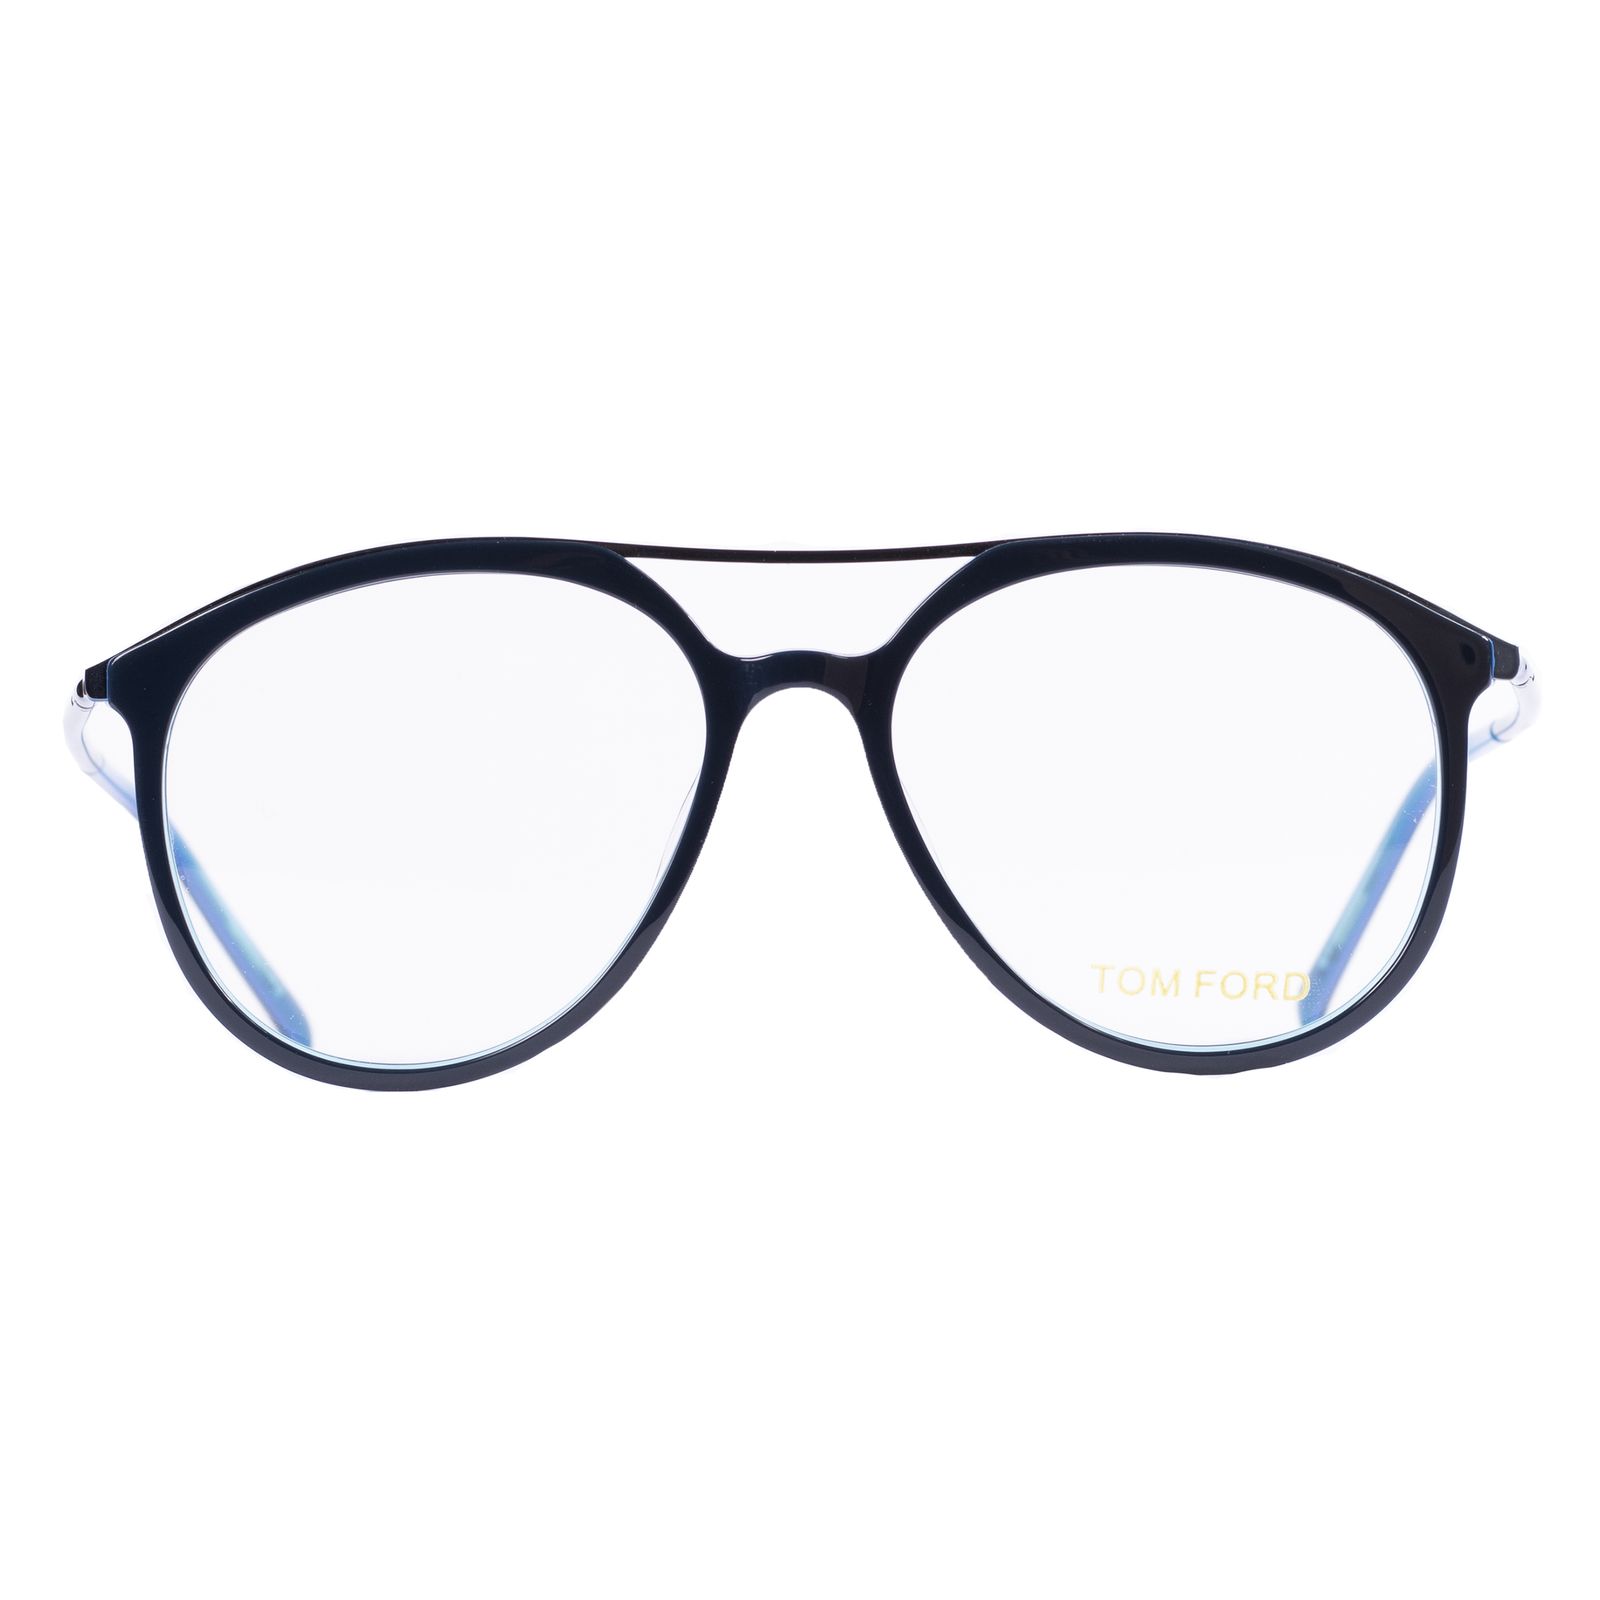 فریم عینک طبی مدل 20115 -  - 1